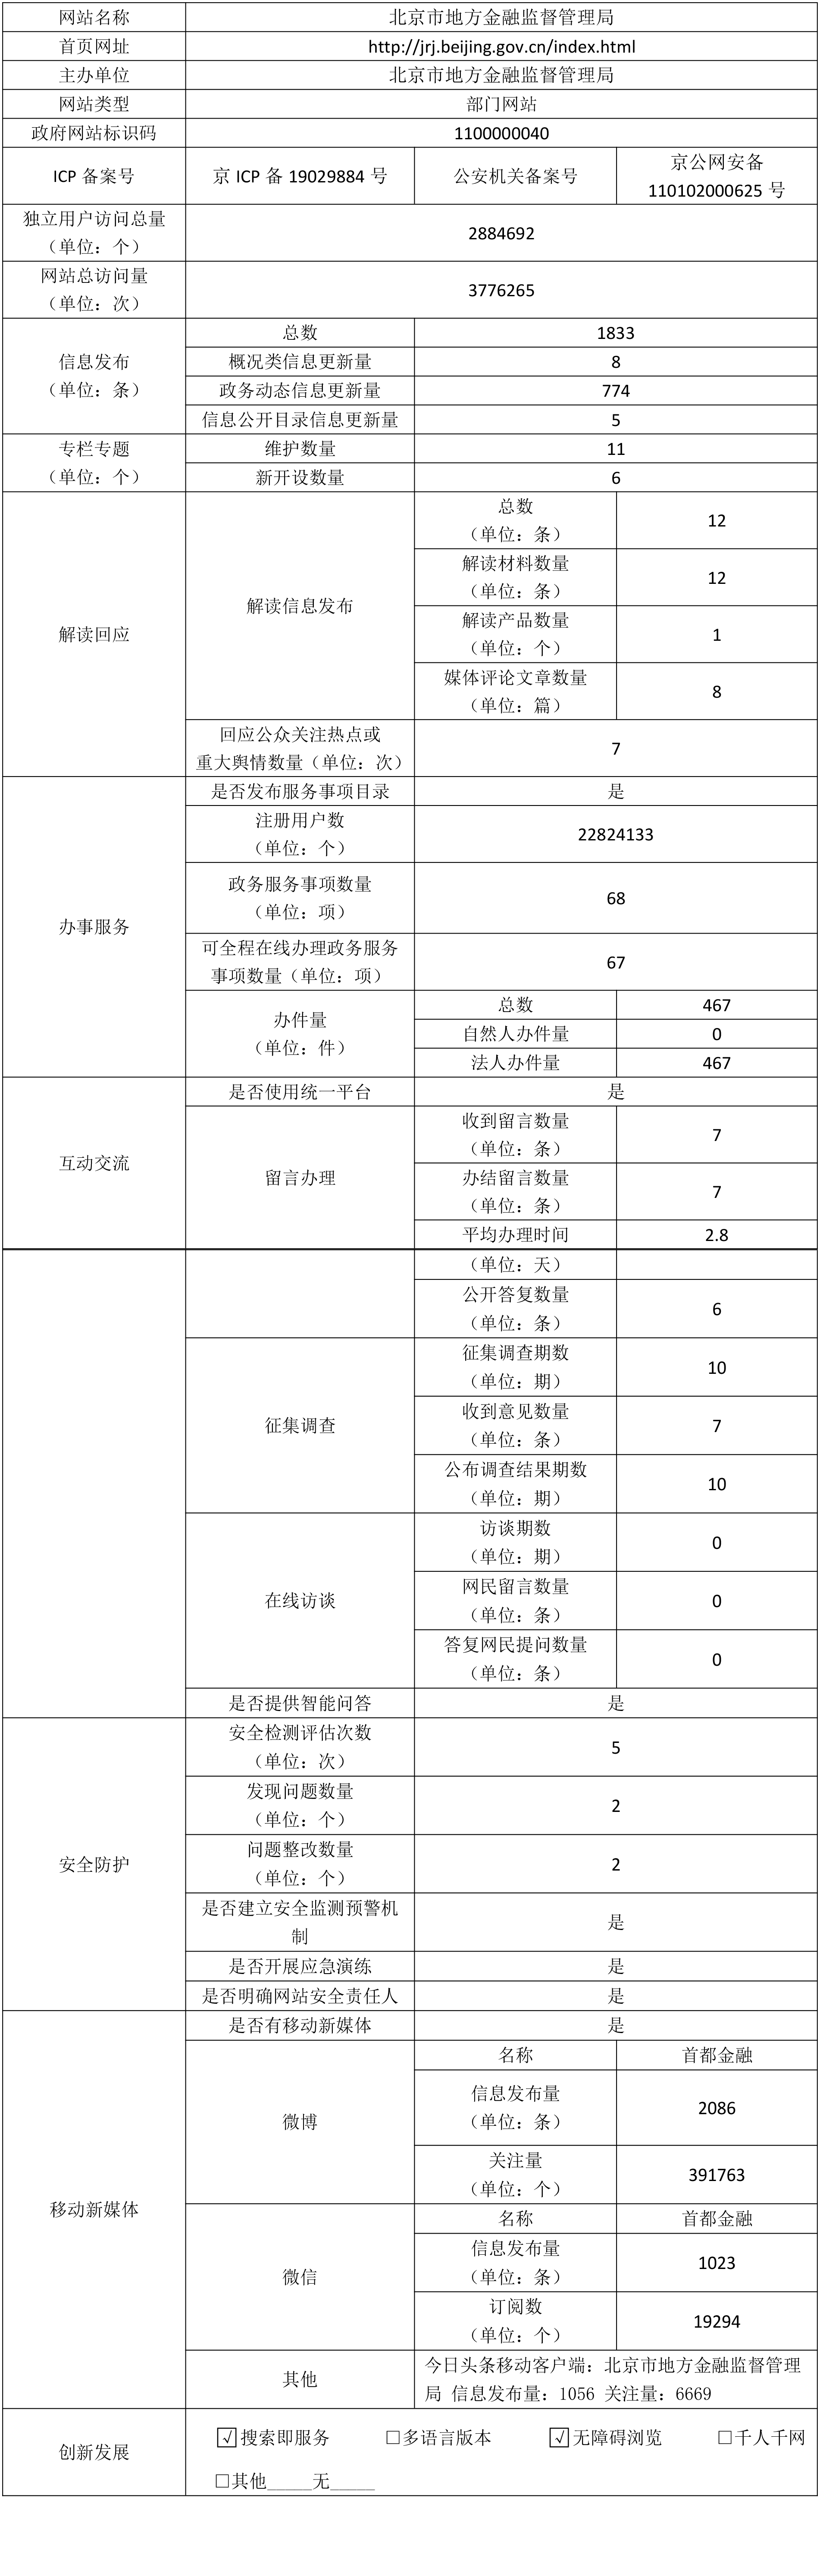 北京市地方金融监督管理局2020年政府网站年度工作报表